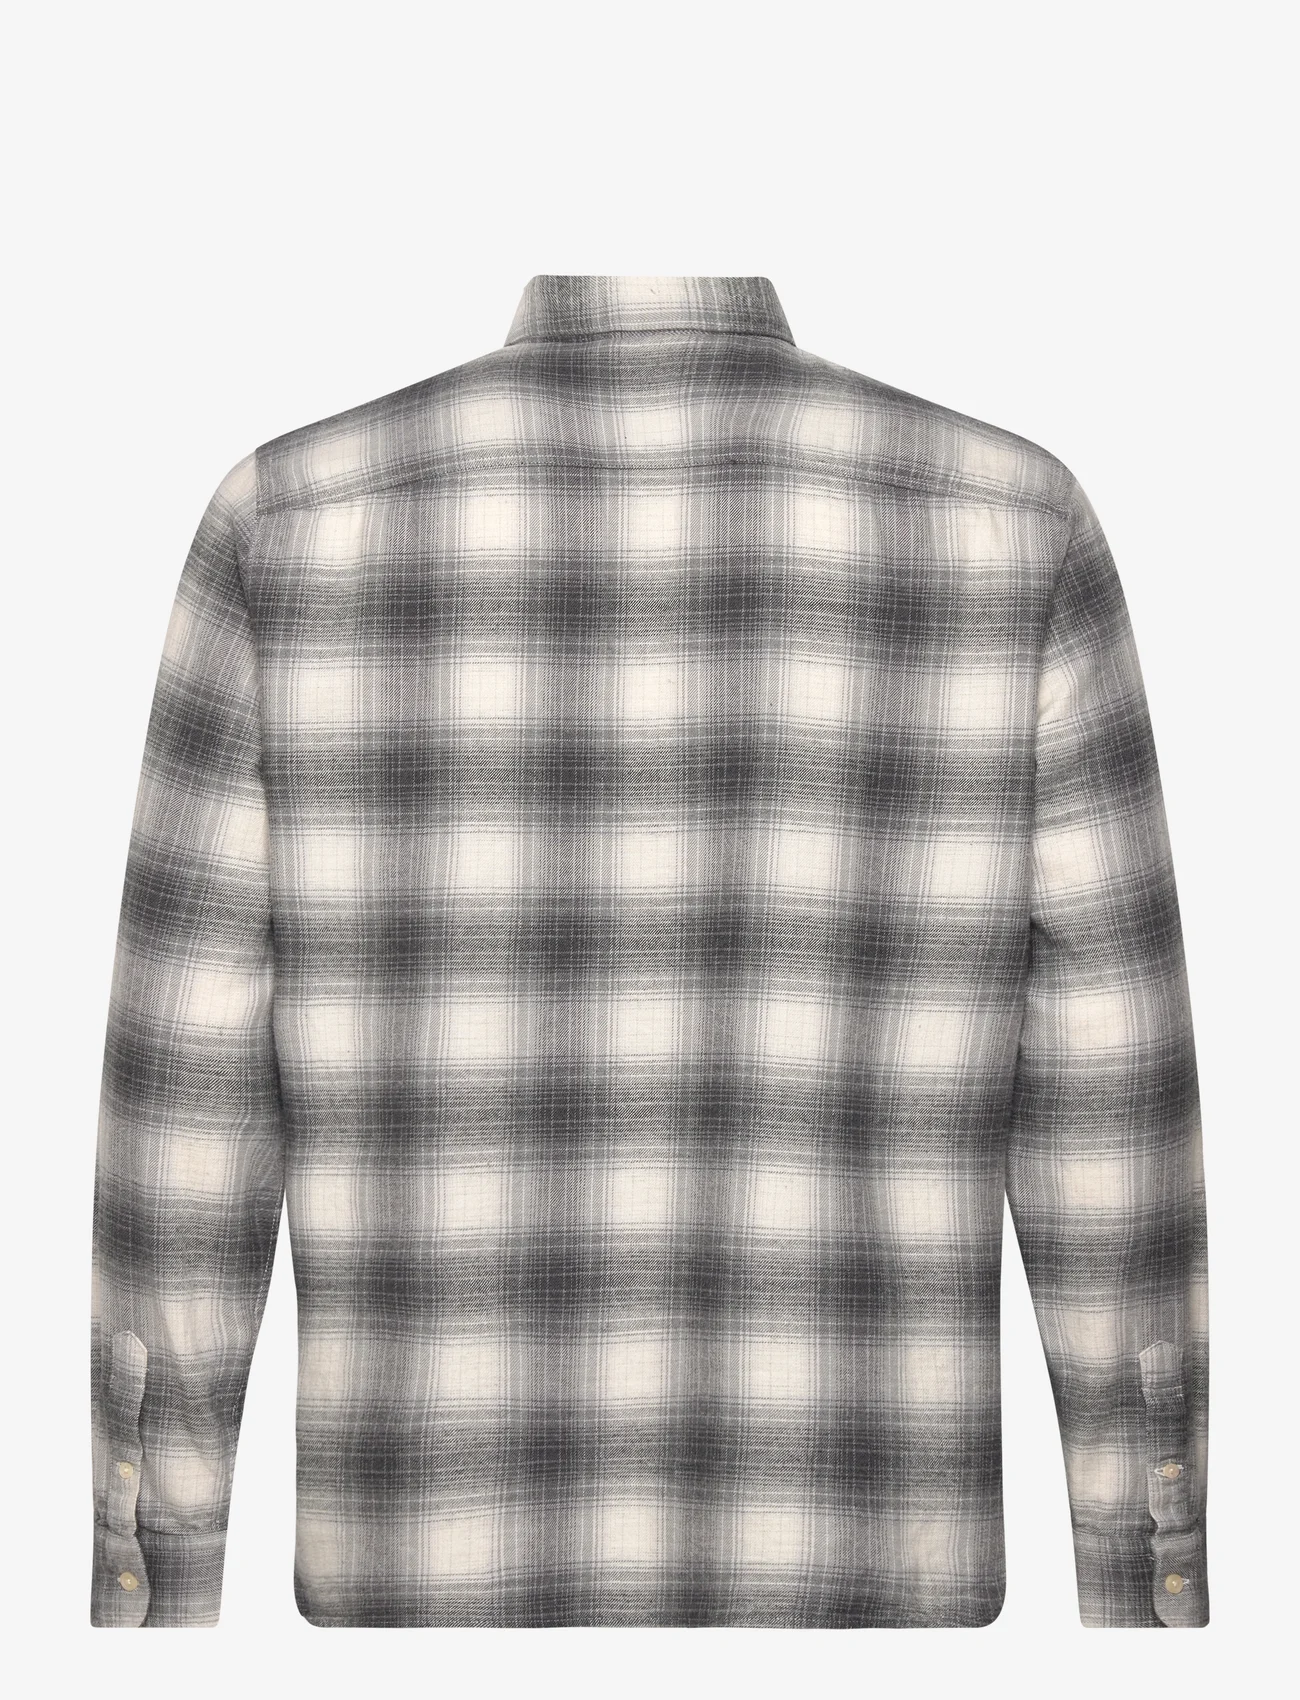 AllSaints - OMEGA LS SHIRT - ternede skjorter - rock grey - 1